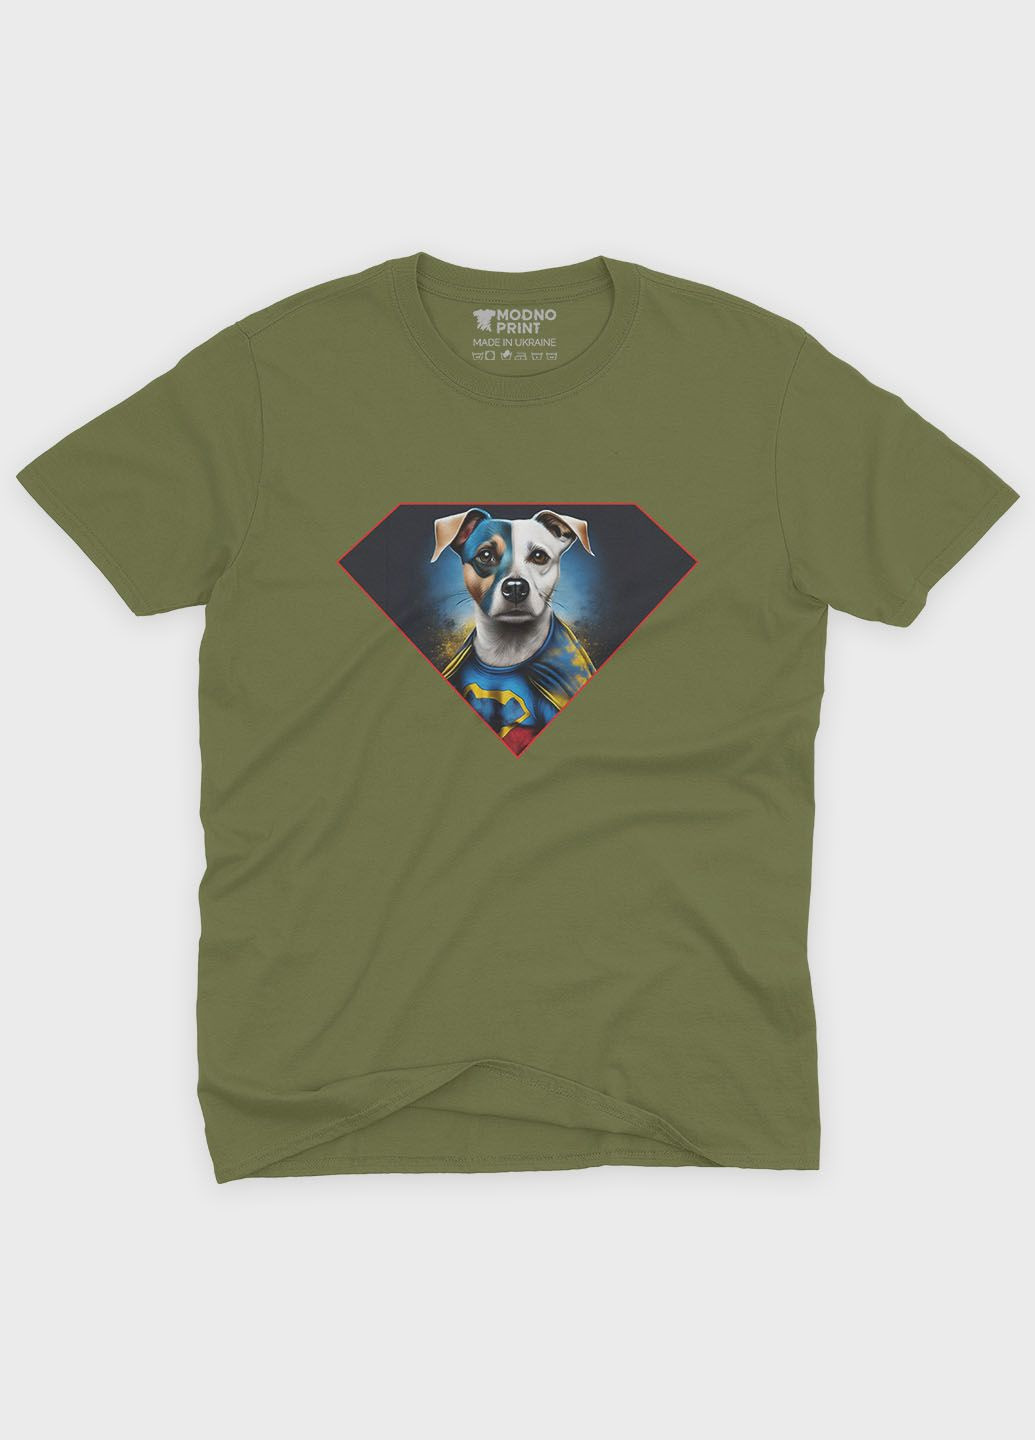 Хаки (оливковая) мужская футболка с патриотическим принтом пес патрон (ts001-5-hgr-005-1-135) Modno